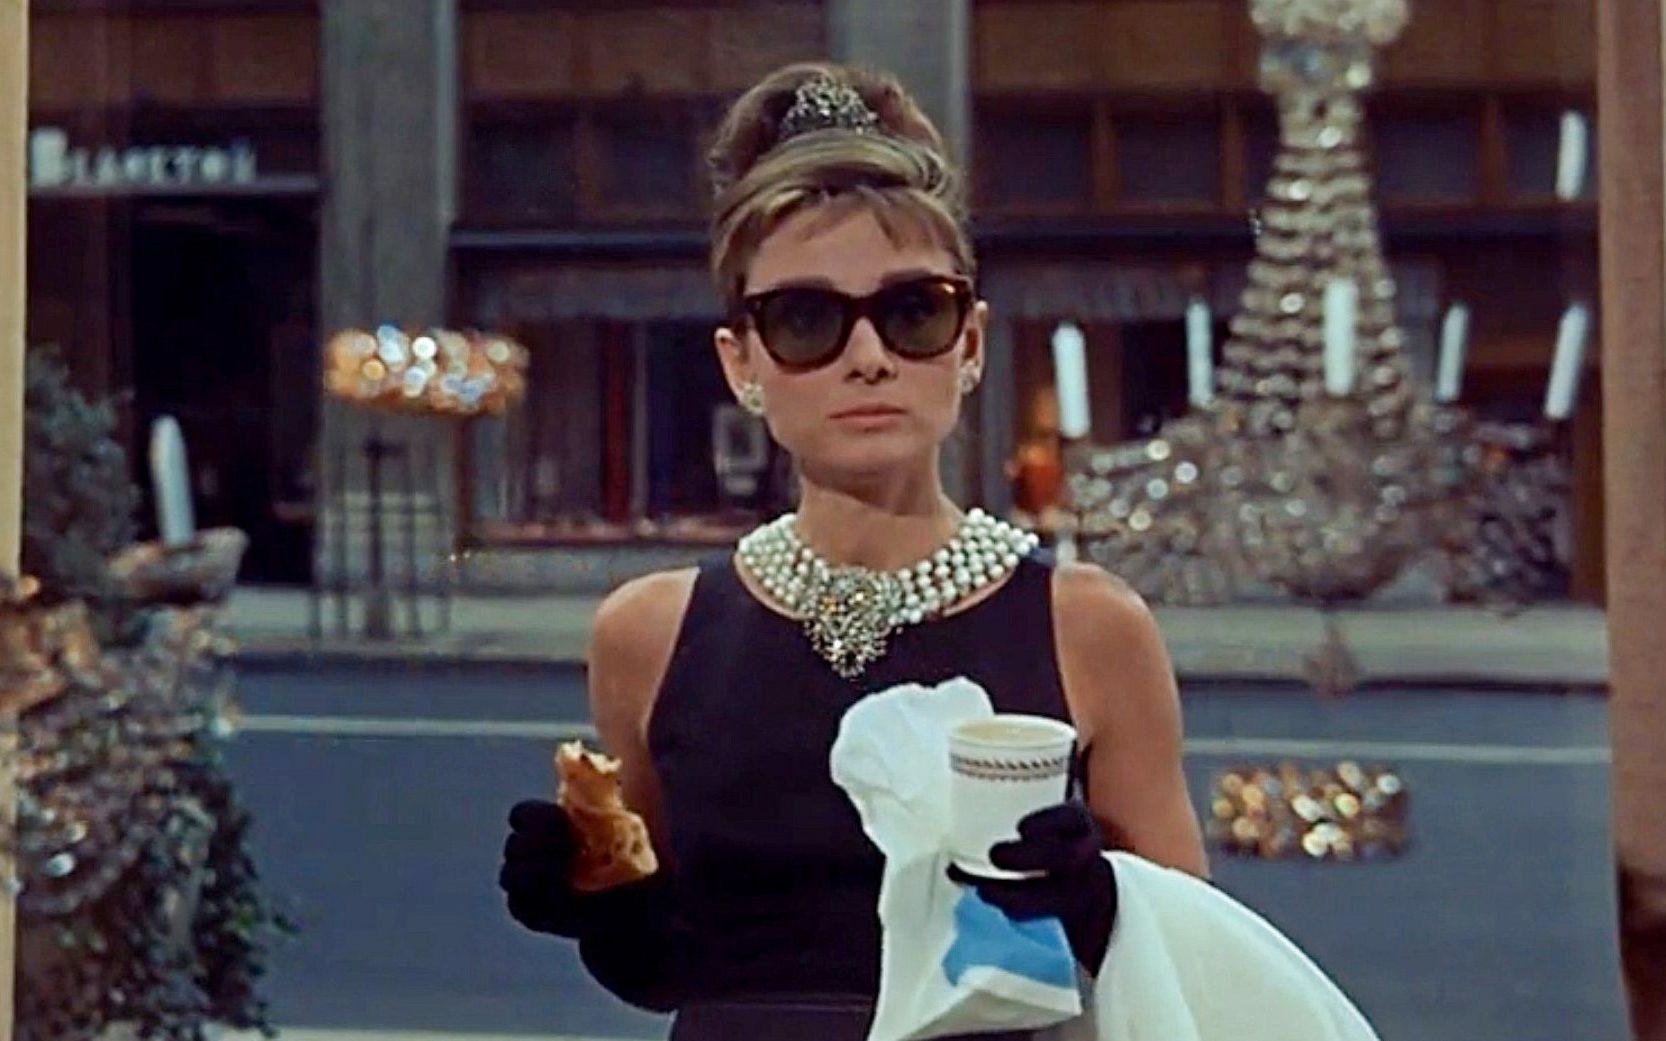 Ubierz się jak Audrey Hepburn. Poznaj styl gwiazdy /fot. kadr z filmu "Śniadanie u Tiffany'ego" (media)